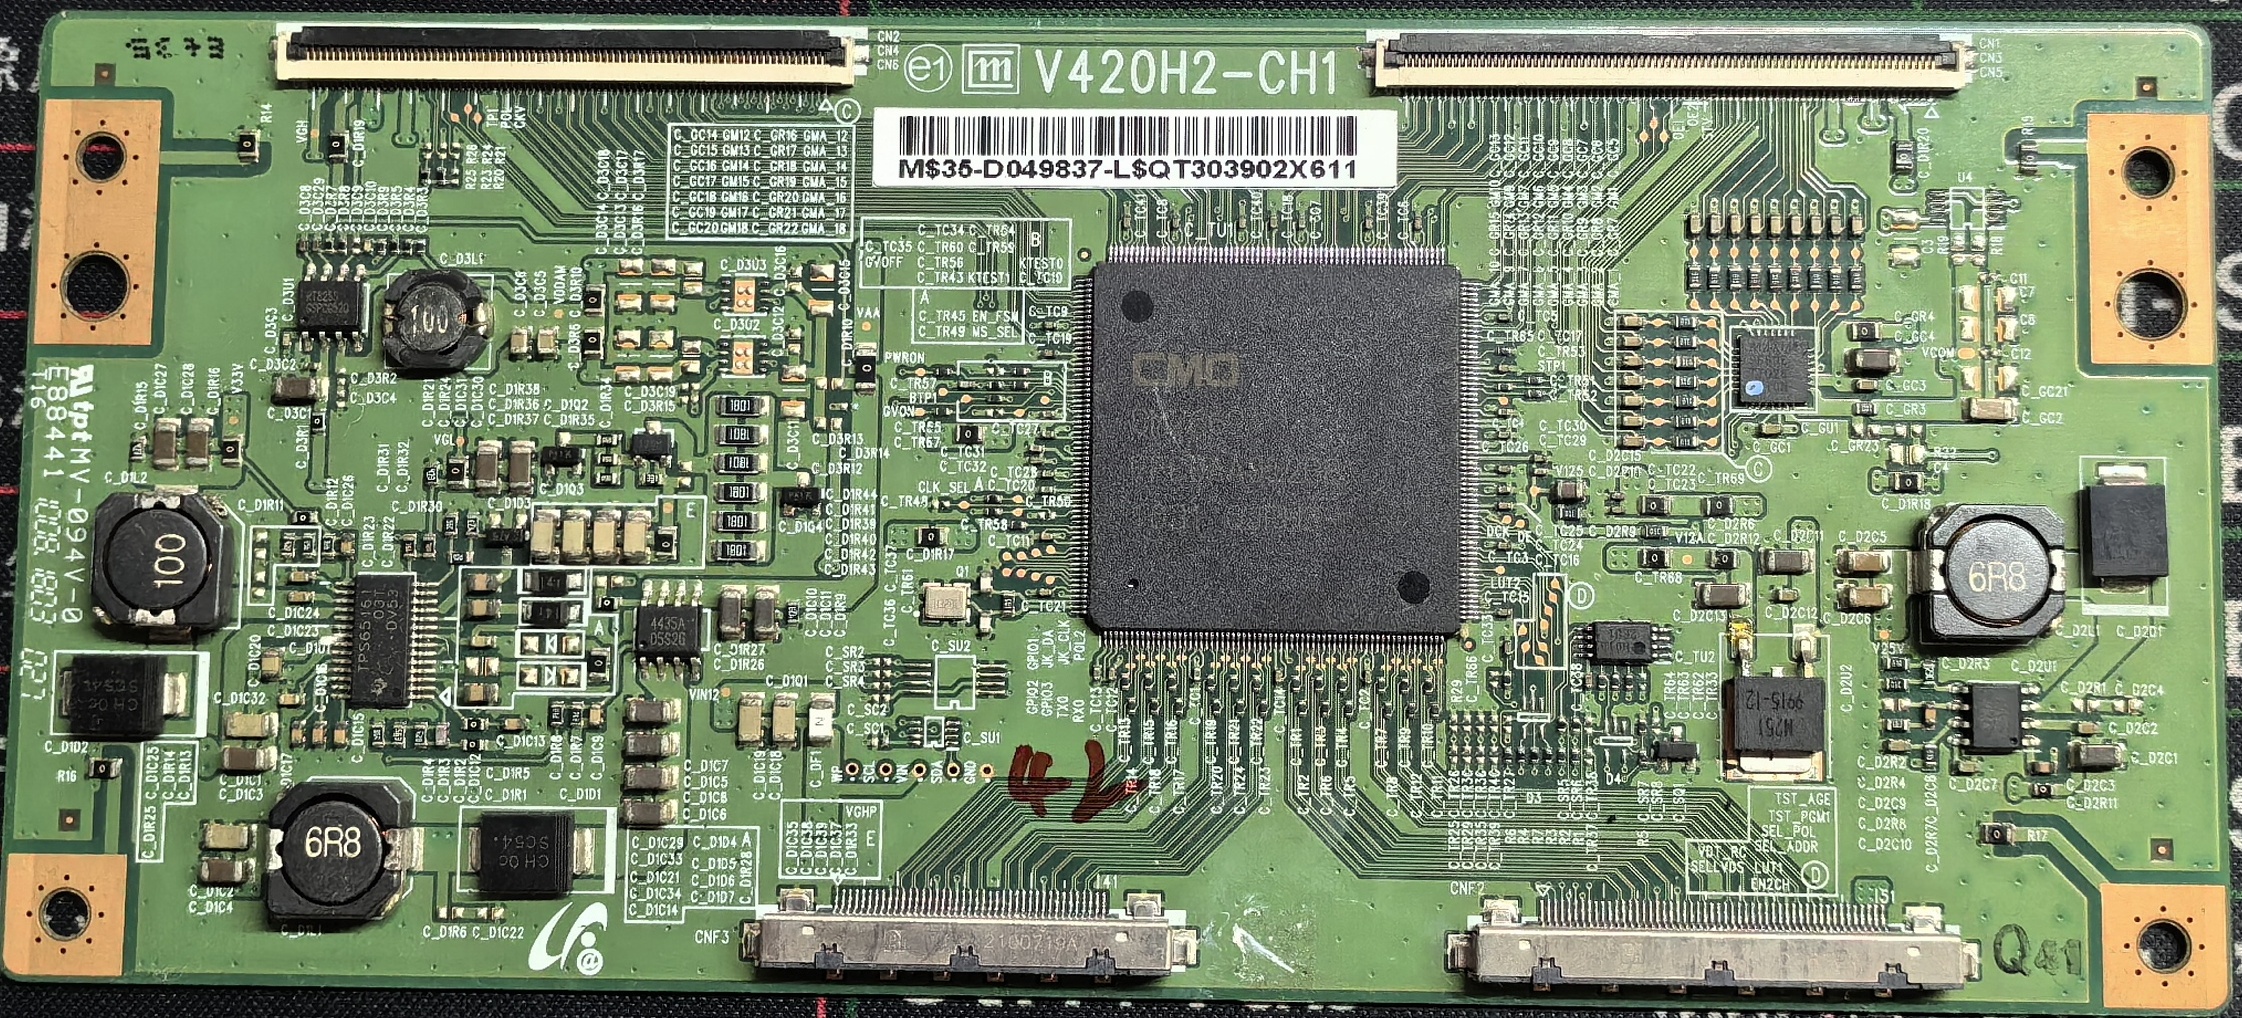 一件包邮原装46E62RN创维46E60HR逻辑板V420H2-CH1奇美屏按需发货 电子元器件市场 显示屏/LCD液晶屏/LED屏/TFT屏 原图主图